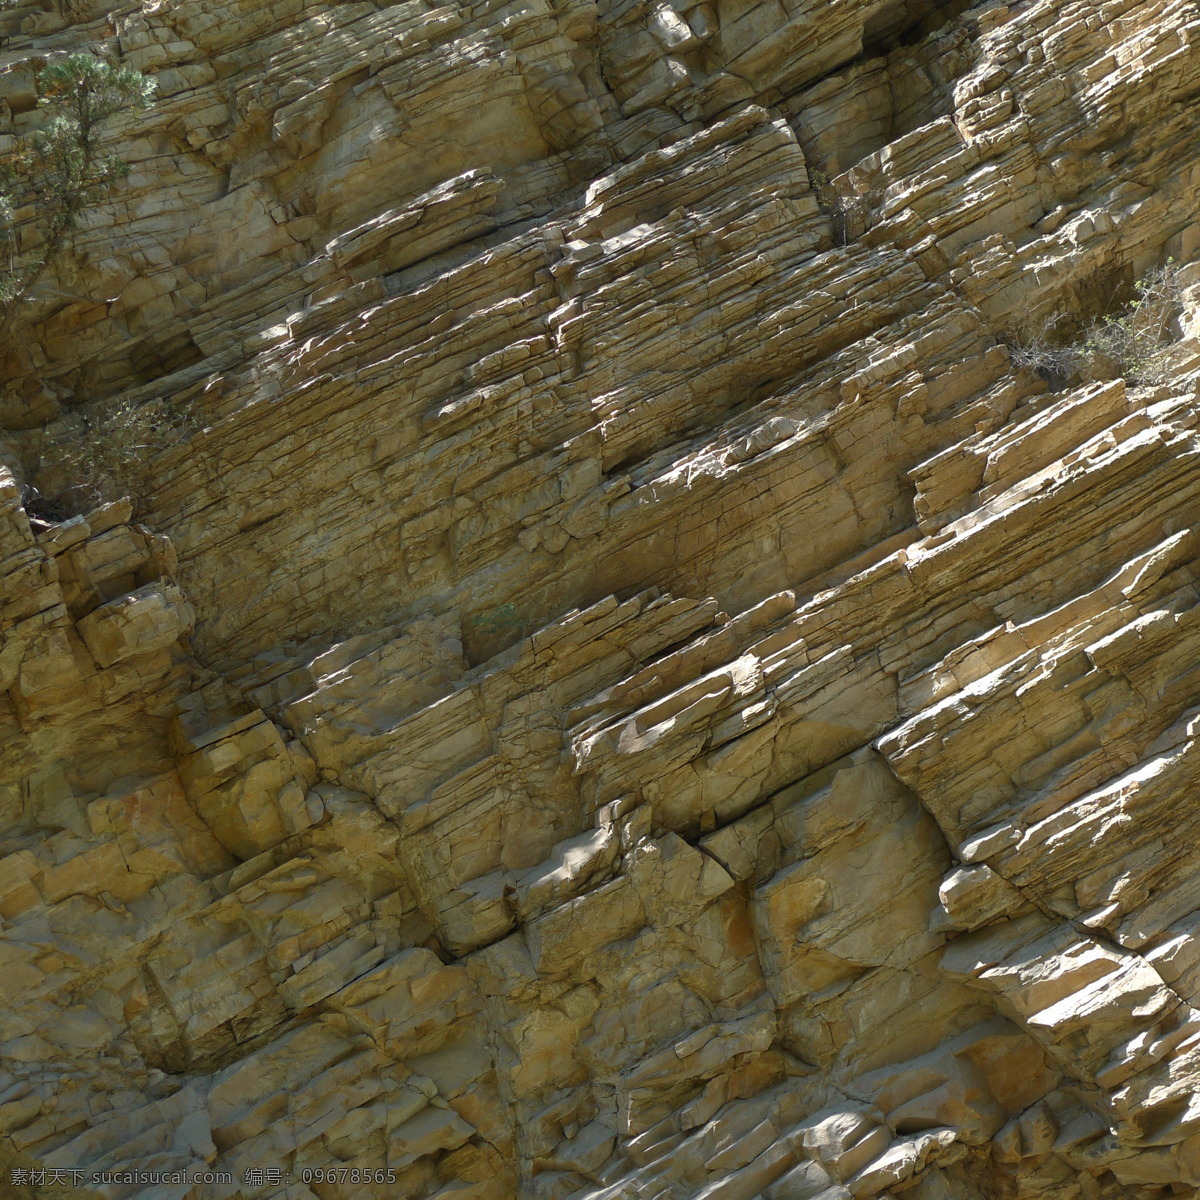 燕山岩石 岩石 石头 石板 山石 石 岩画 岩石壁 岩壁 石块 岩石素材 自然景观 山水风景